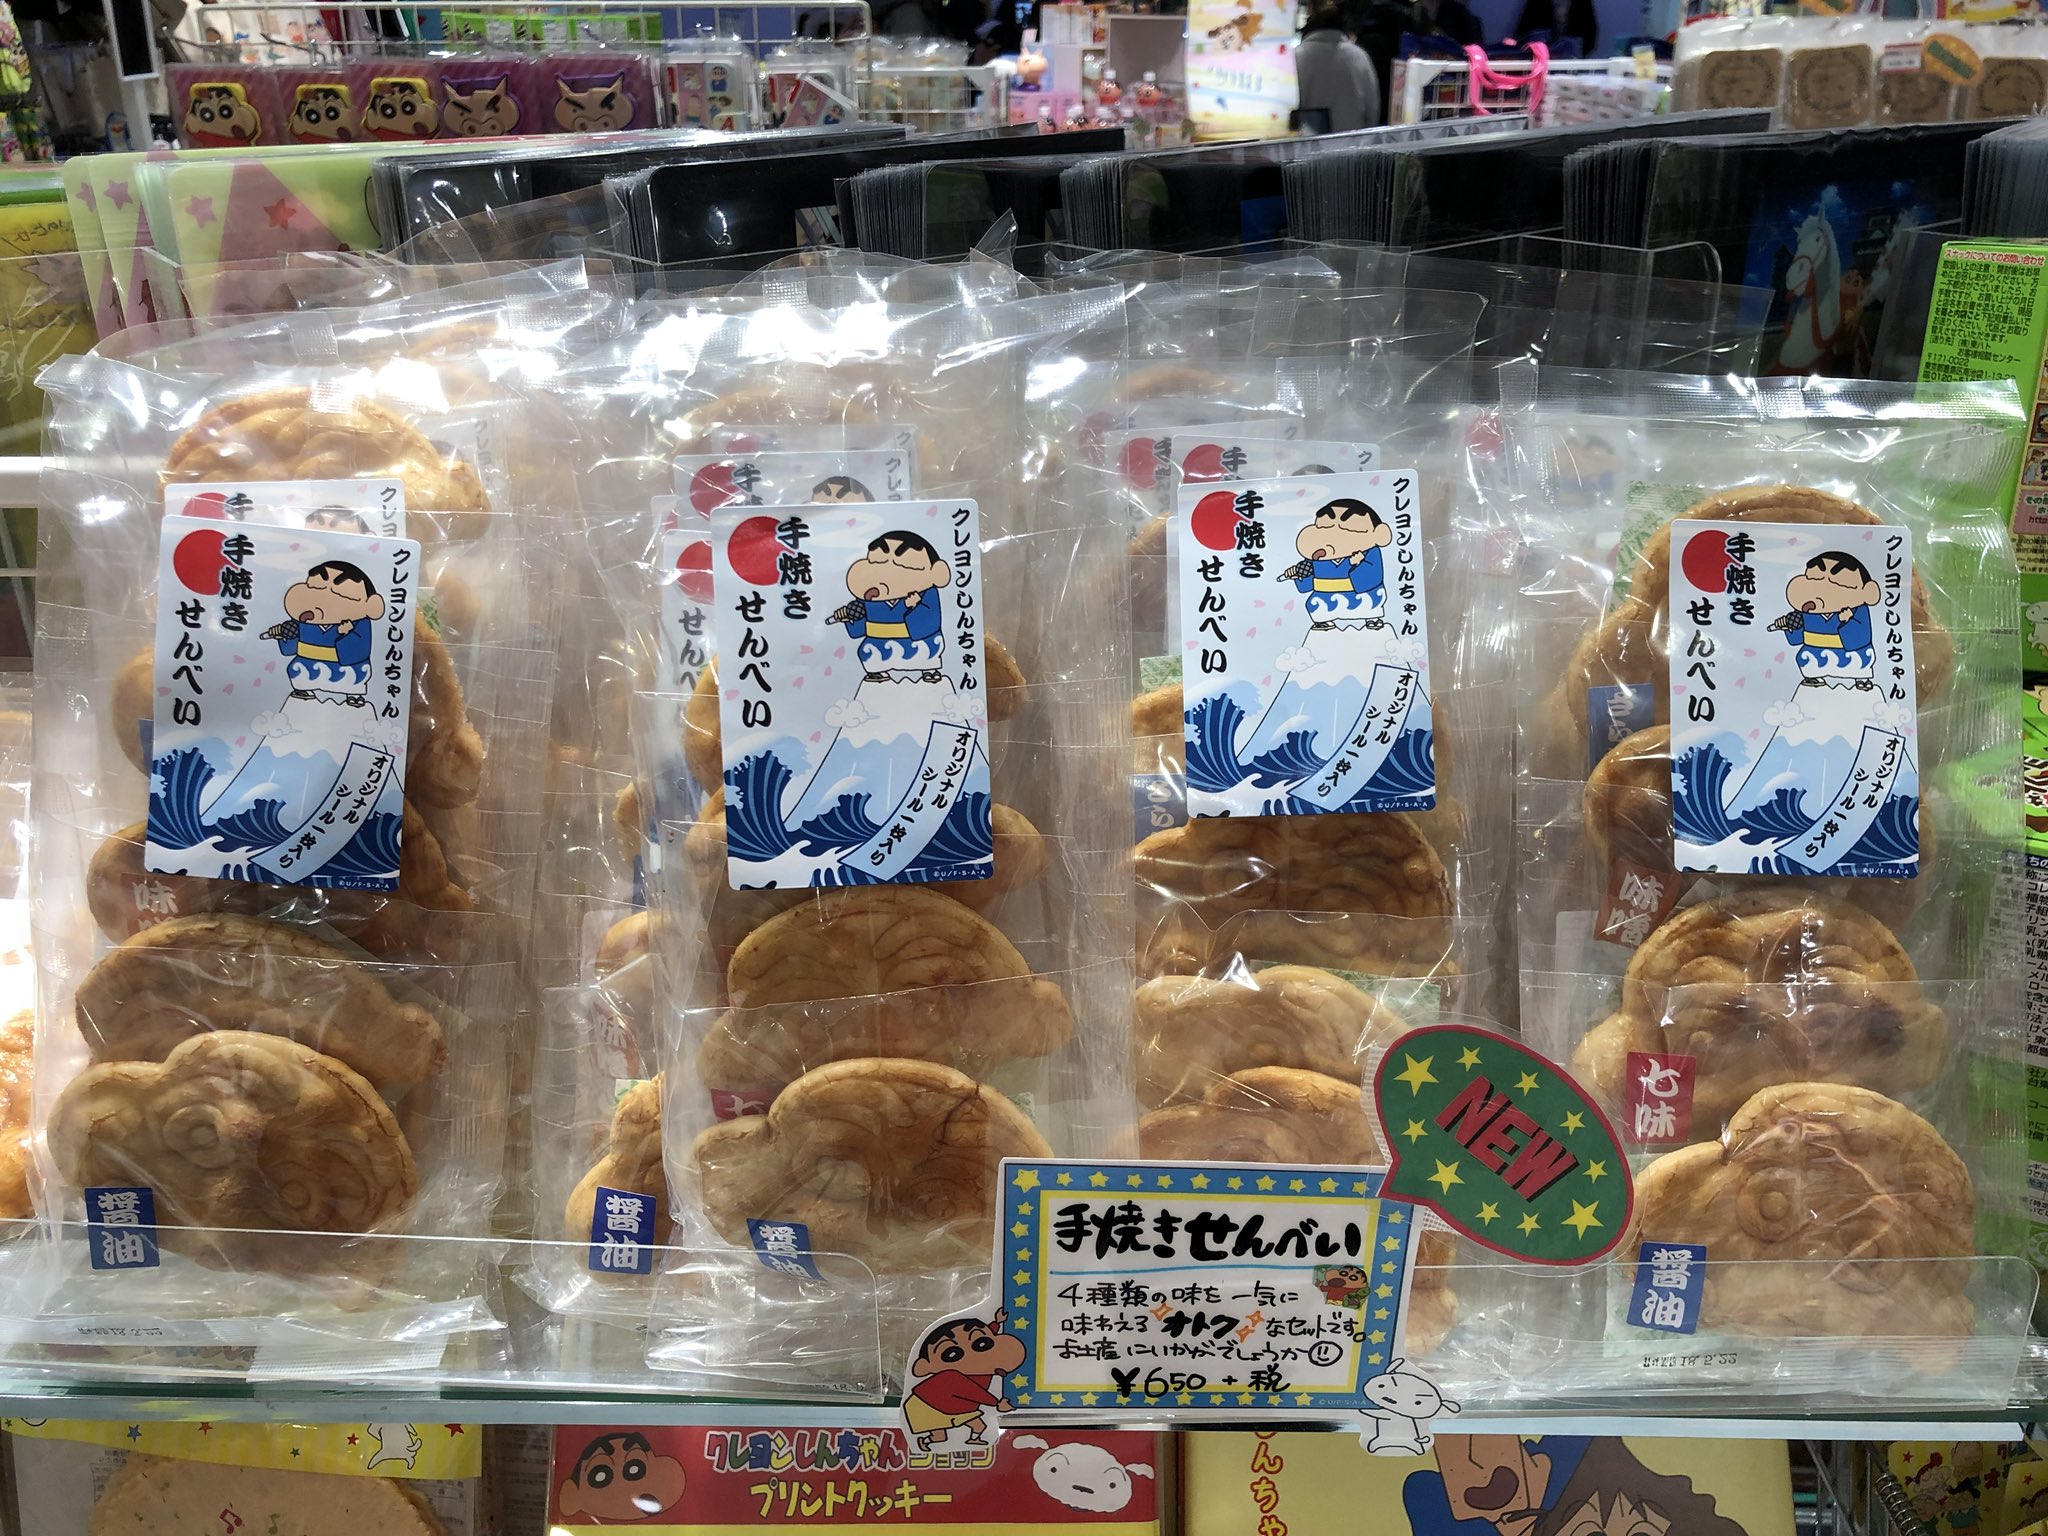 公式 クレヨンしんちゃんオフィシャルショップ アクションデパート東京駅店 さんのツイート こんにちは 今日も元気にオープンしましたー アクションデパート東京駅店では大人気の手焼き煎餅4枚セットを販売中 シールがランダムで入っている